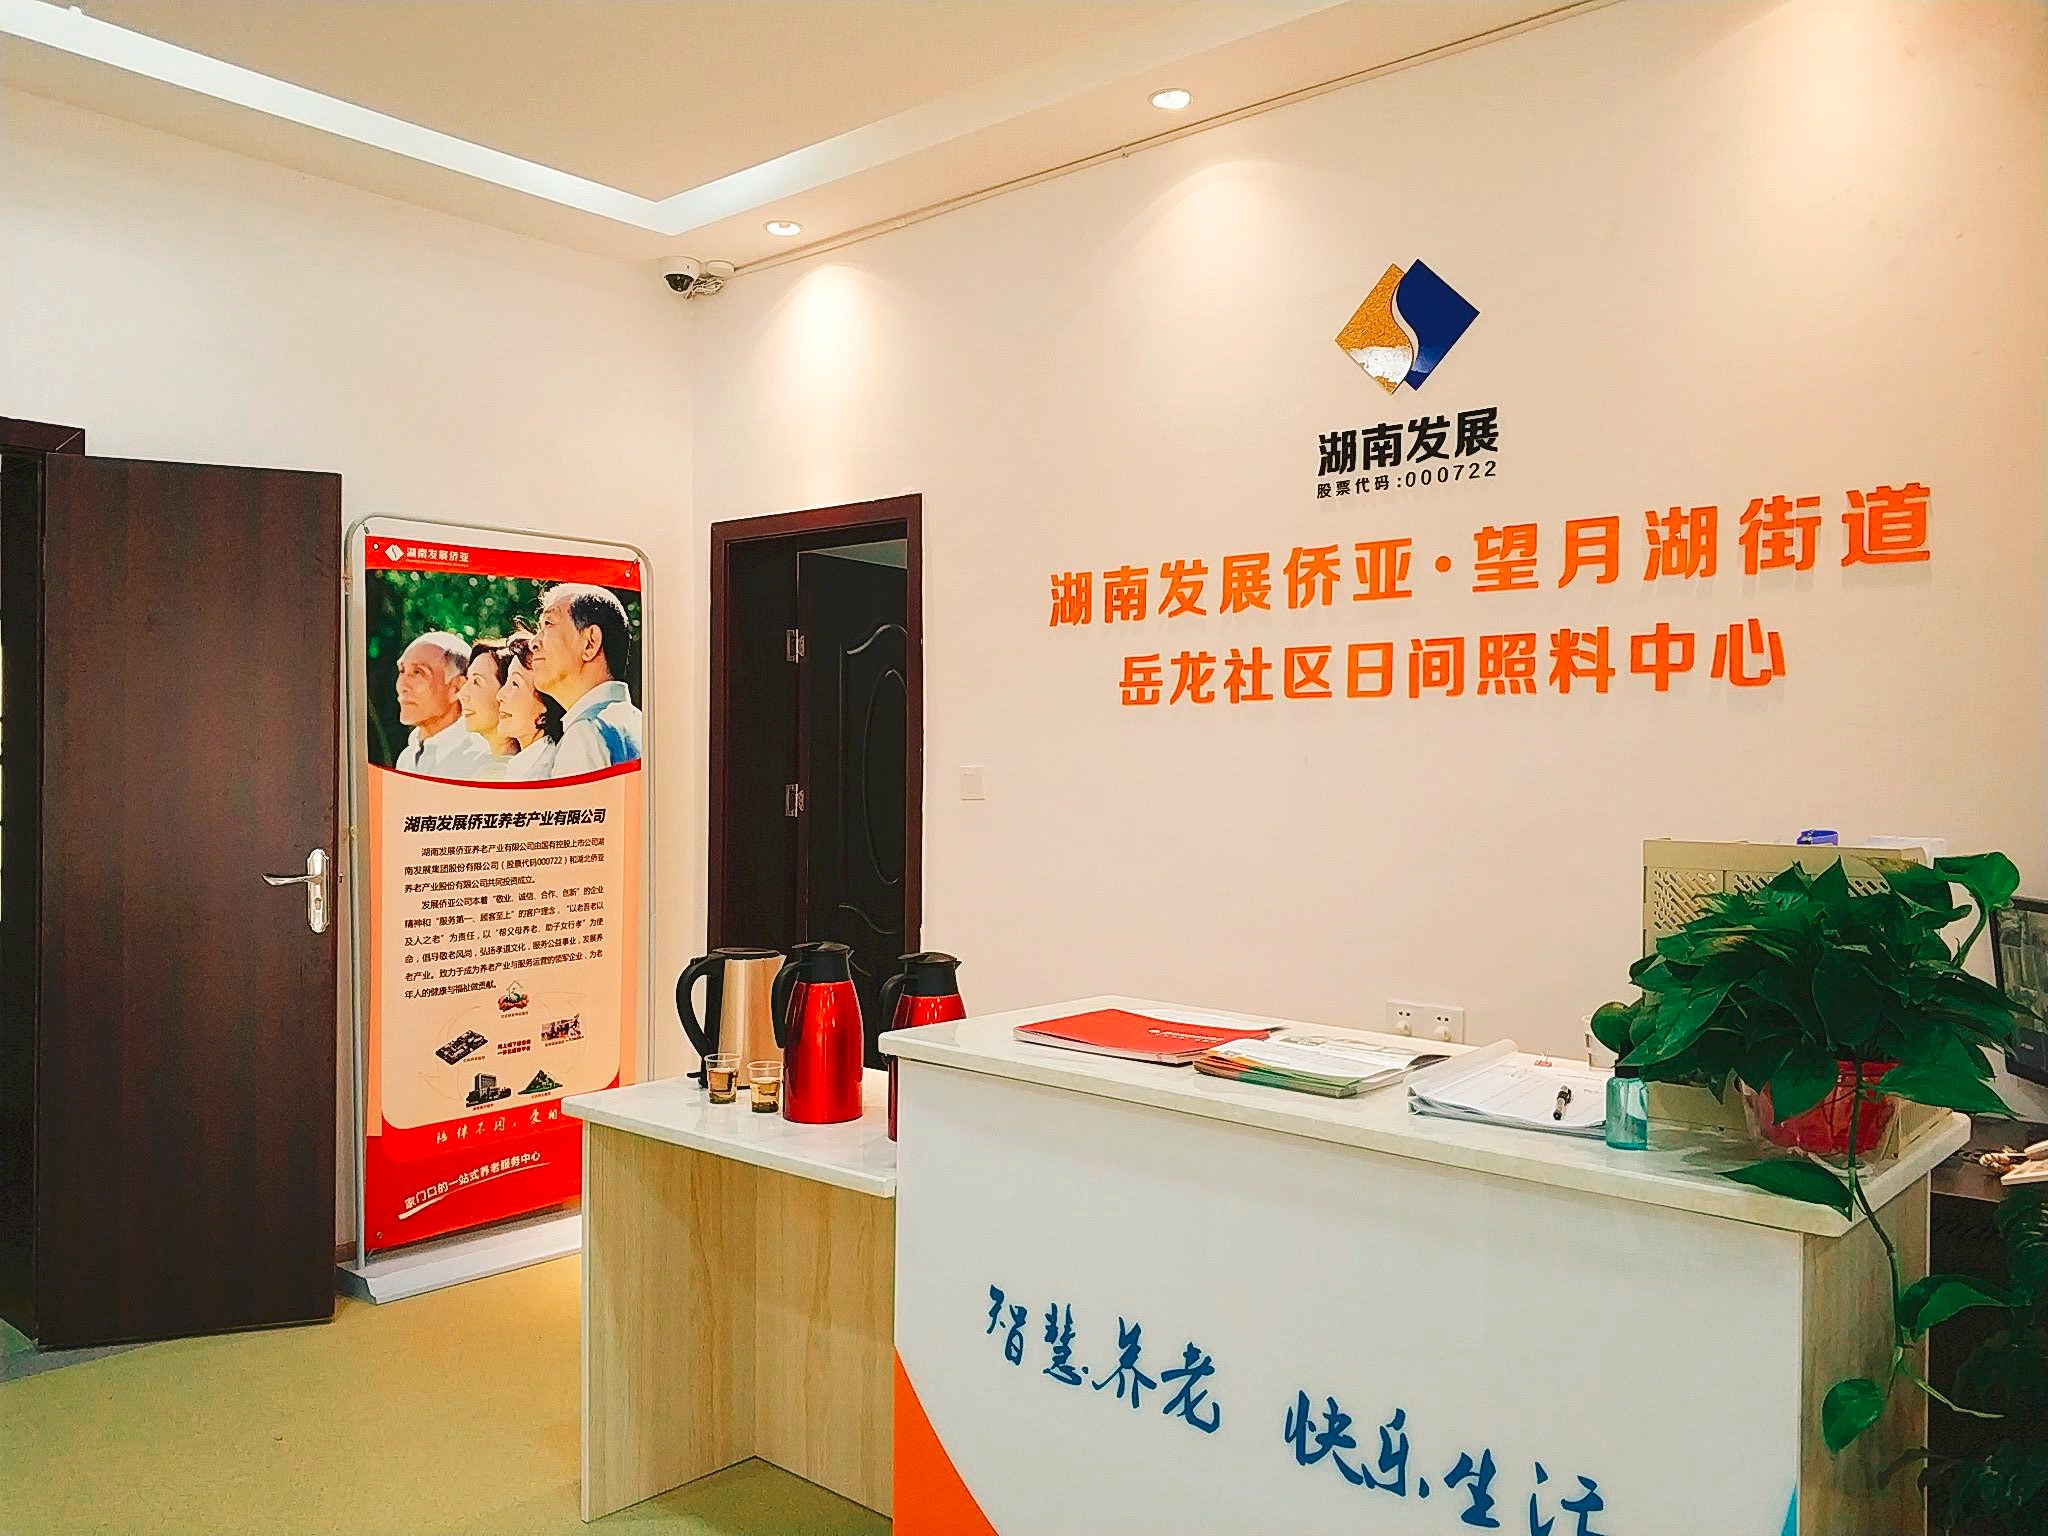 球友会（中国）有限公司官网第一家社区养老中心开放 打造水电、养老产业双轮驱动模式